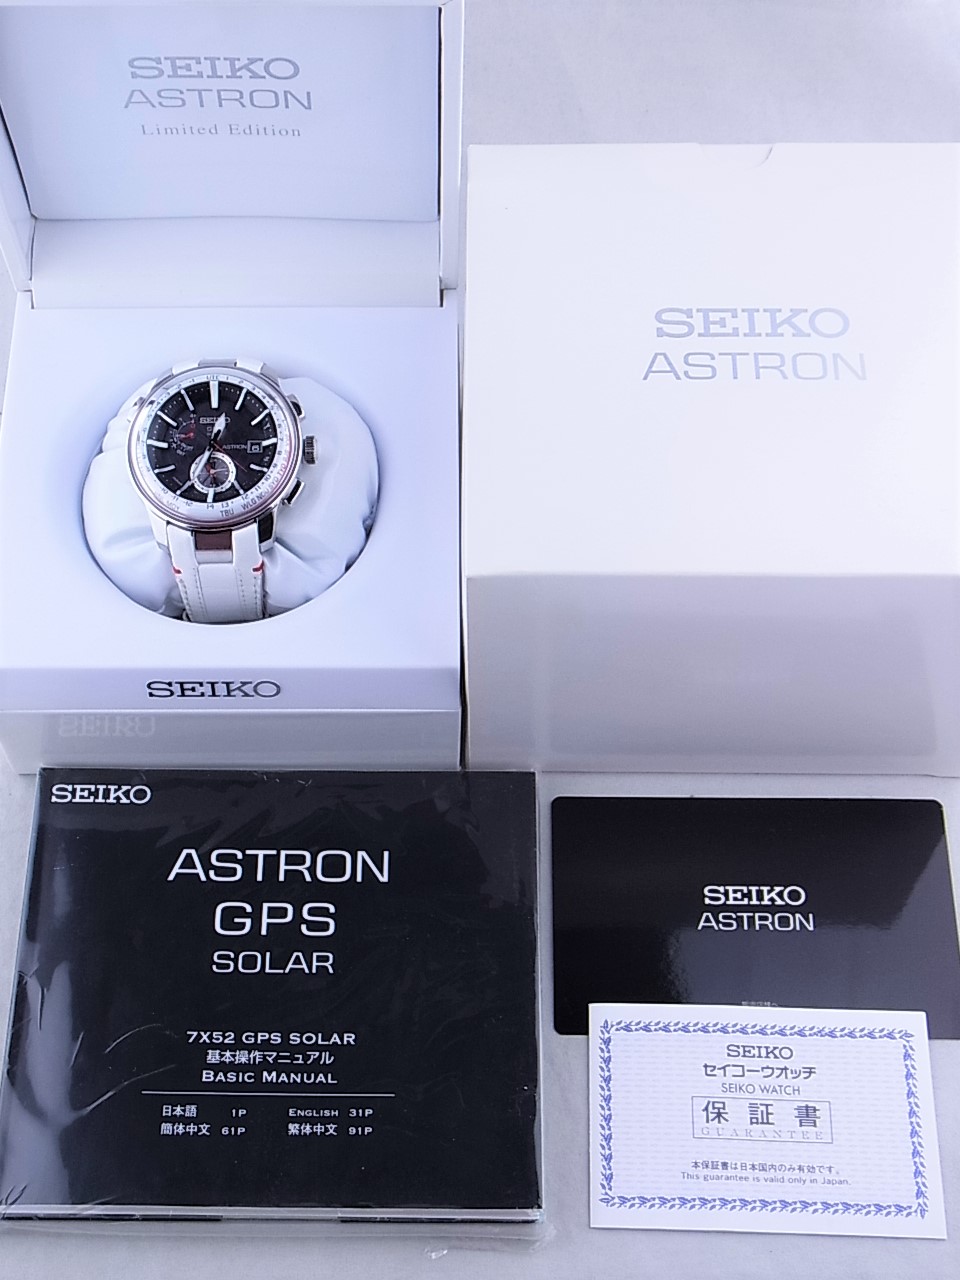 Seiko セイコー ソーラー腕時計 アストロン レザー アナログ Wht Astron 限定革ベルトモデル Gpsソーラー 7x52 0am0 セカンドストリート 衣類 家具 家電等の買取と販売ならセカンドストリート お問い合わせ番号 2319340293125